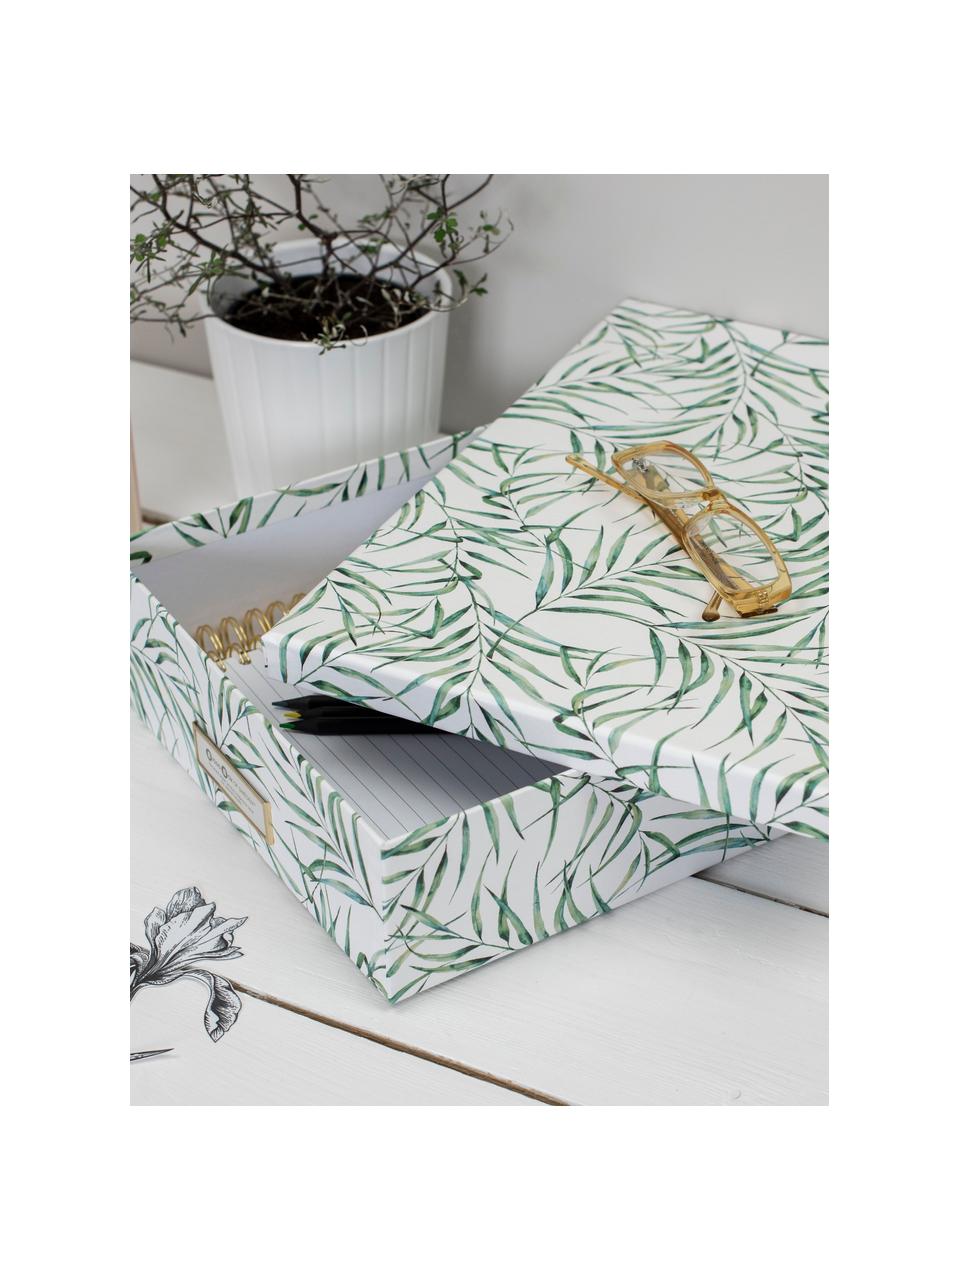 Aufbewahrungsbox Leaf, Fester, laminierter Karton, Weiß, Grün, B 35 x H 9 cm